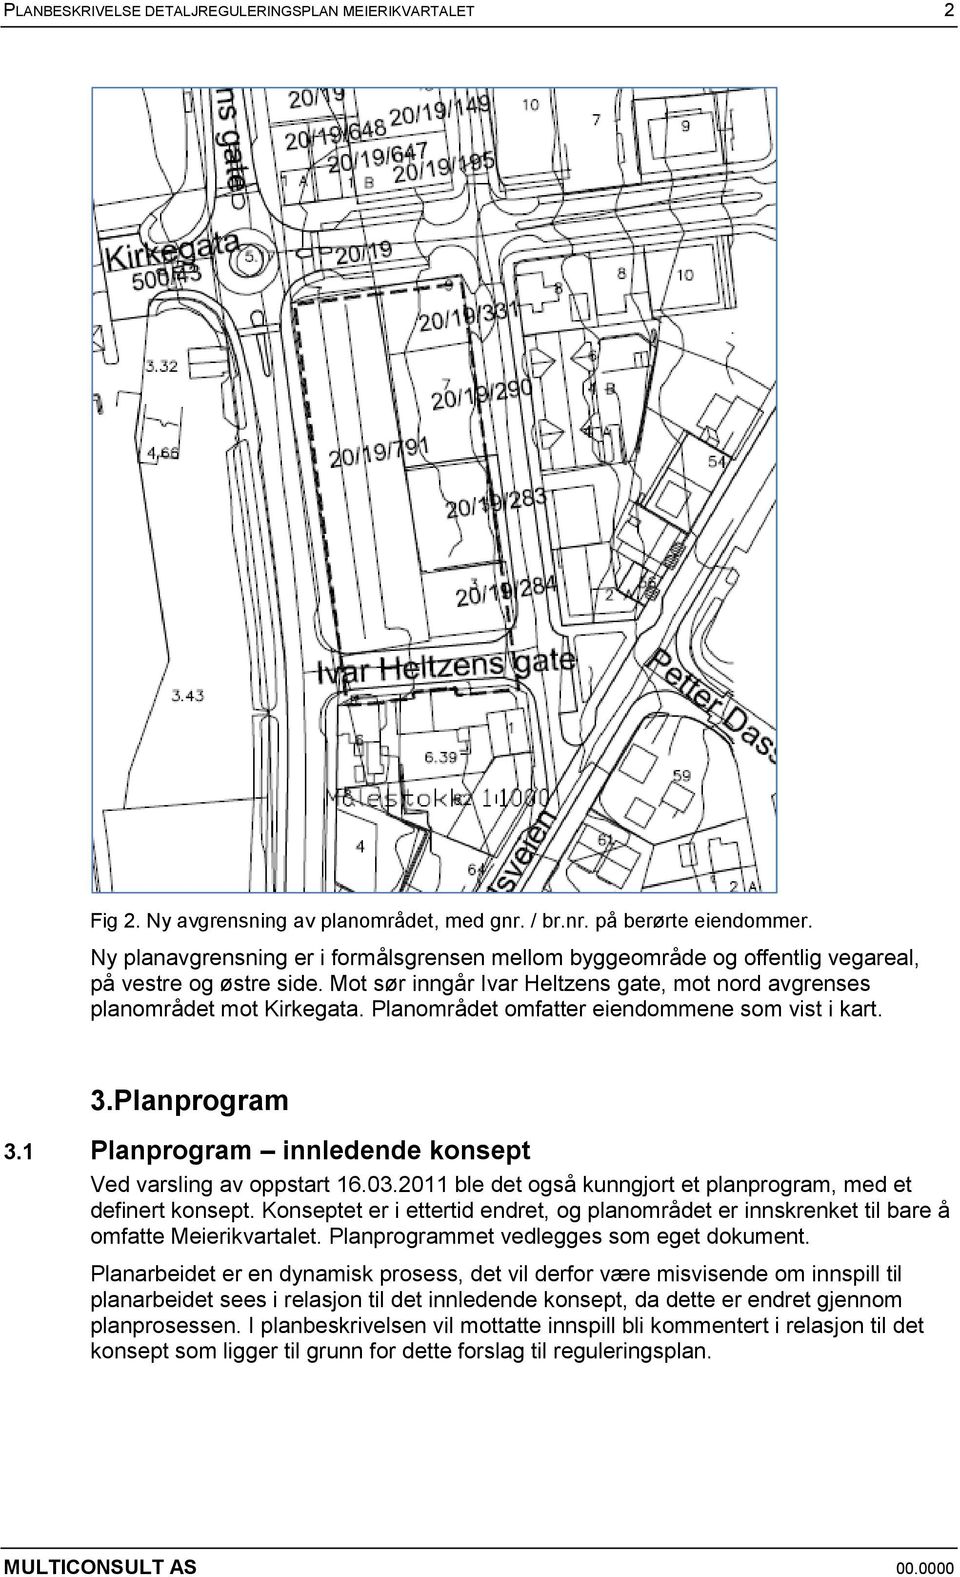 Planområdet omfatter eiendommene som vist i kart. 3.Planprogram 3.1 Planprogram innledende konsept Ved varsling av oppstart 16.03.2011 ble det også kunngjort et planprogram, med et definert konsept.